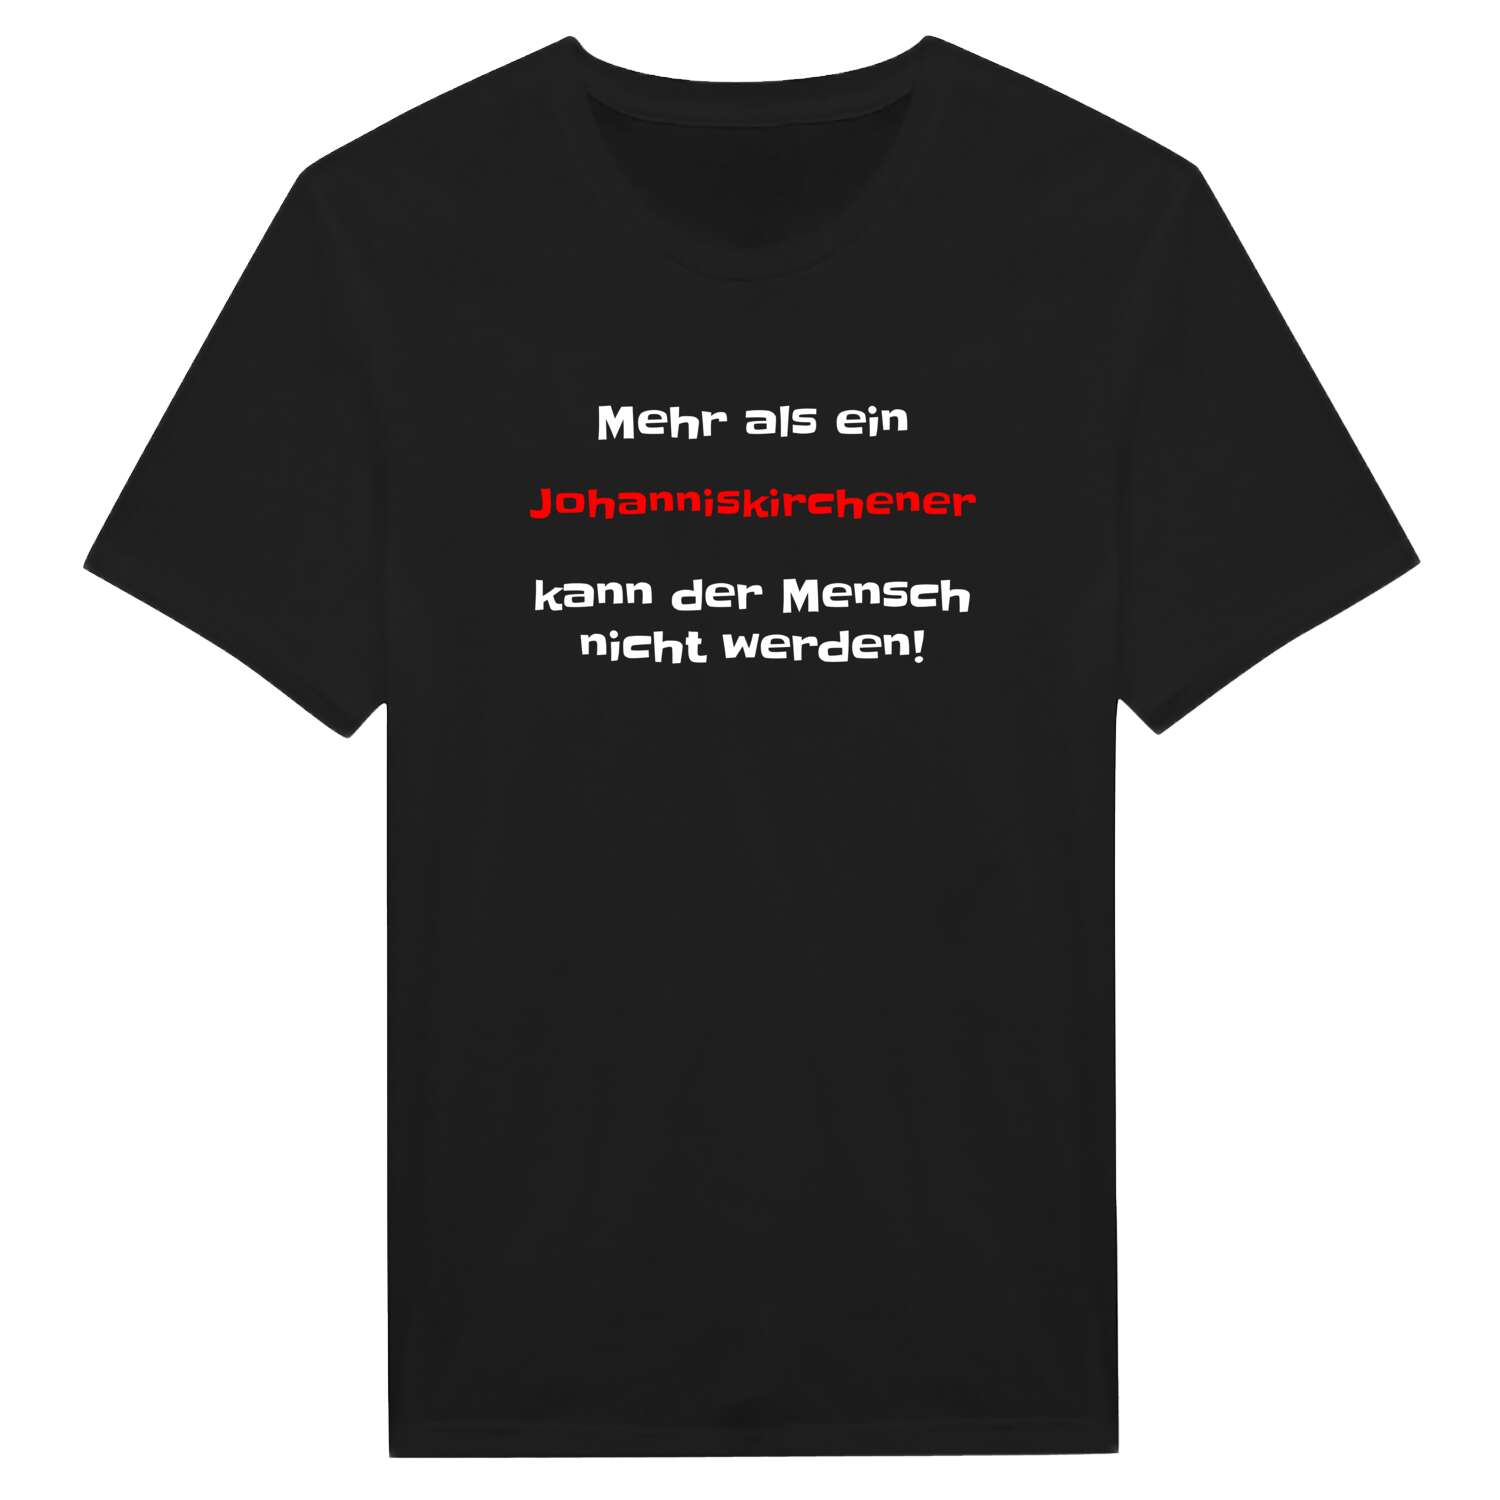 Johanniskirchen T-Shirt »Mehr als ein«